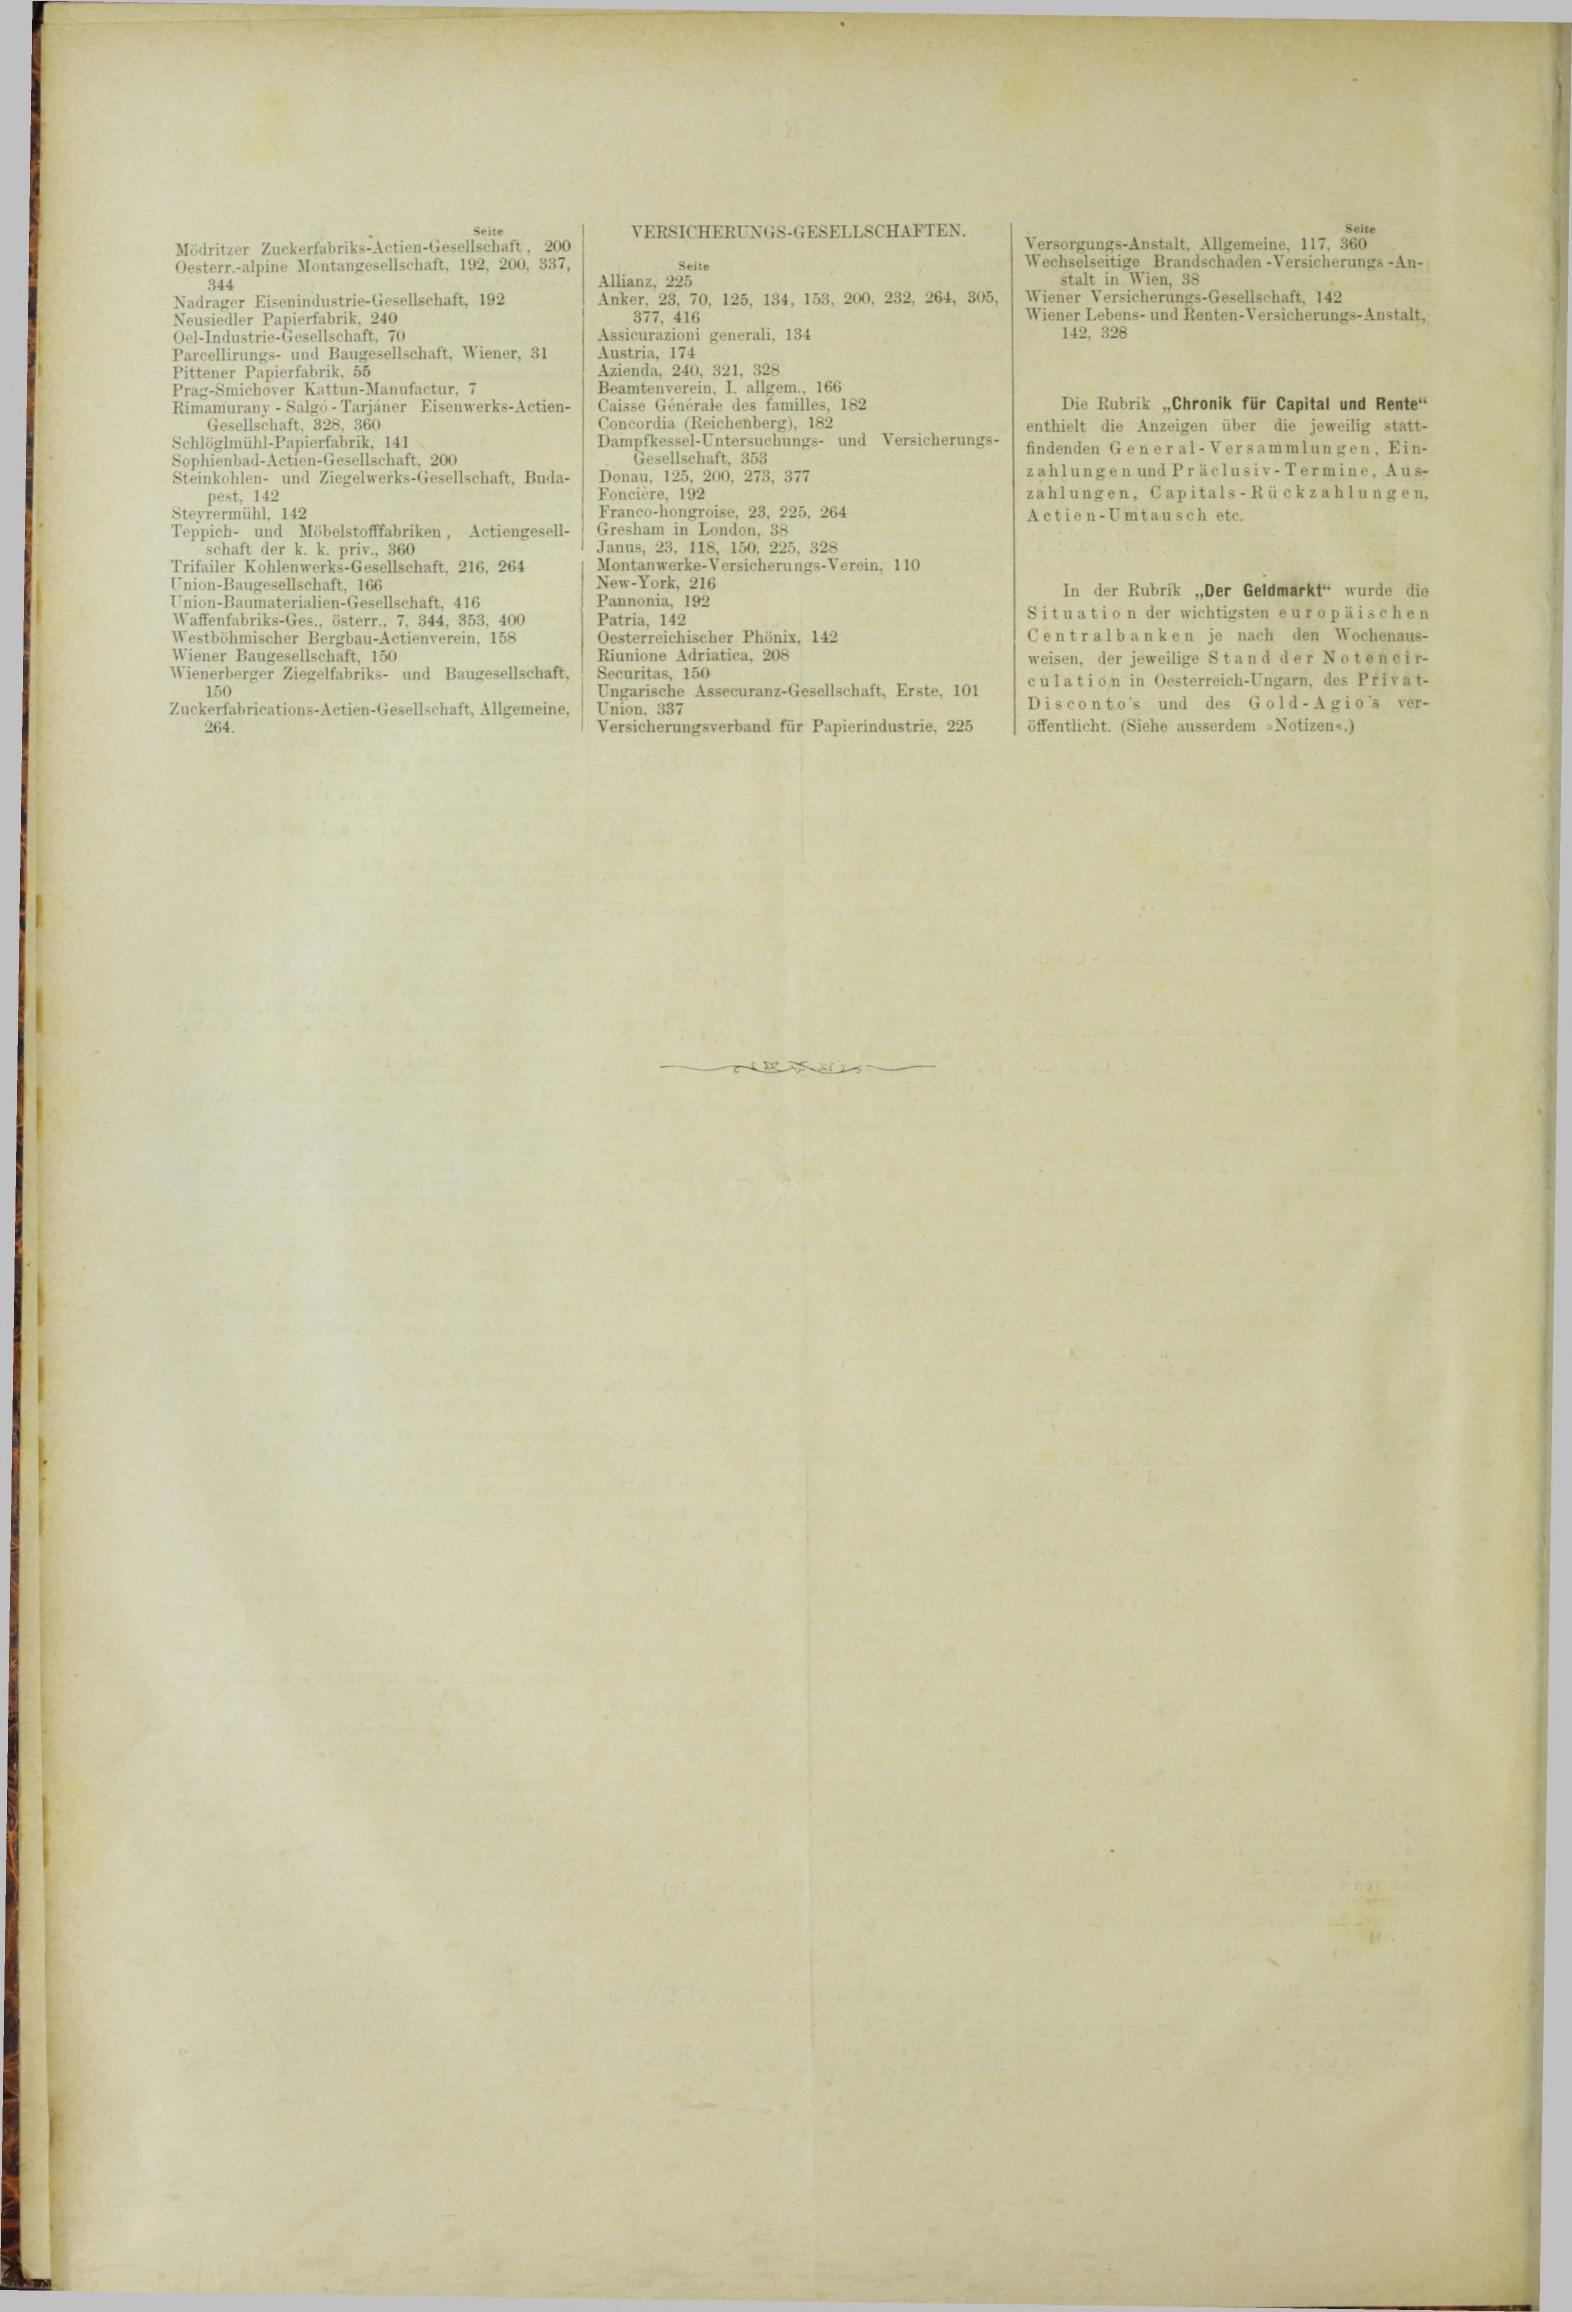 Der Tresor 21.06.1883 - Seite 12